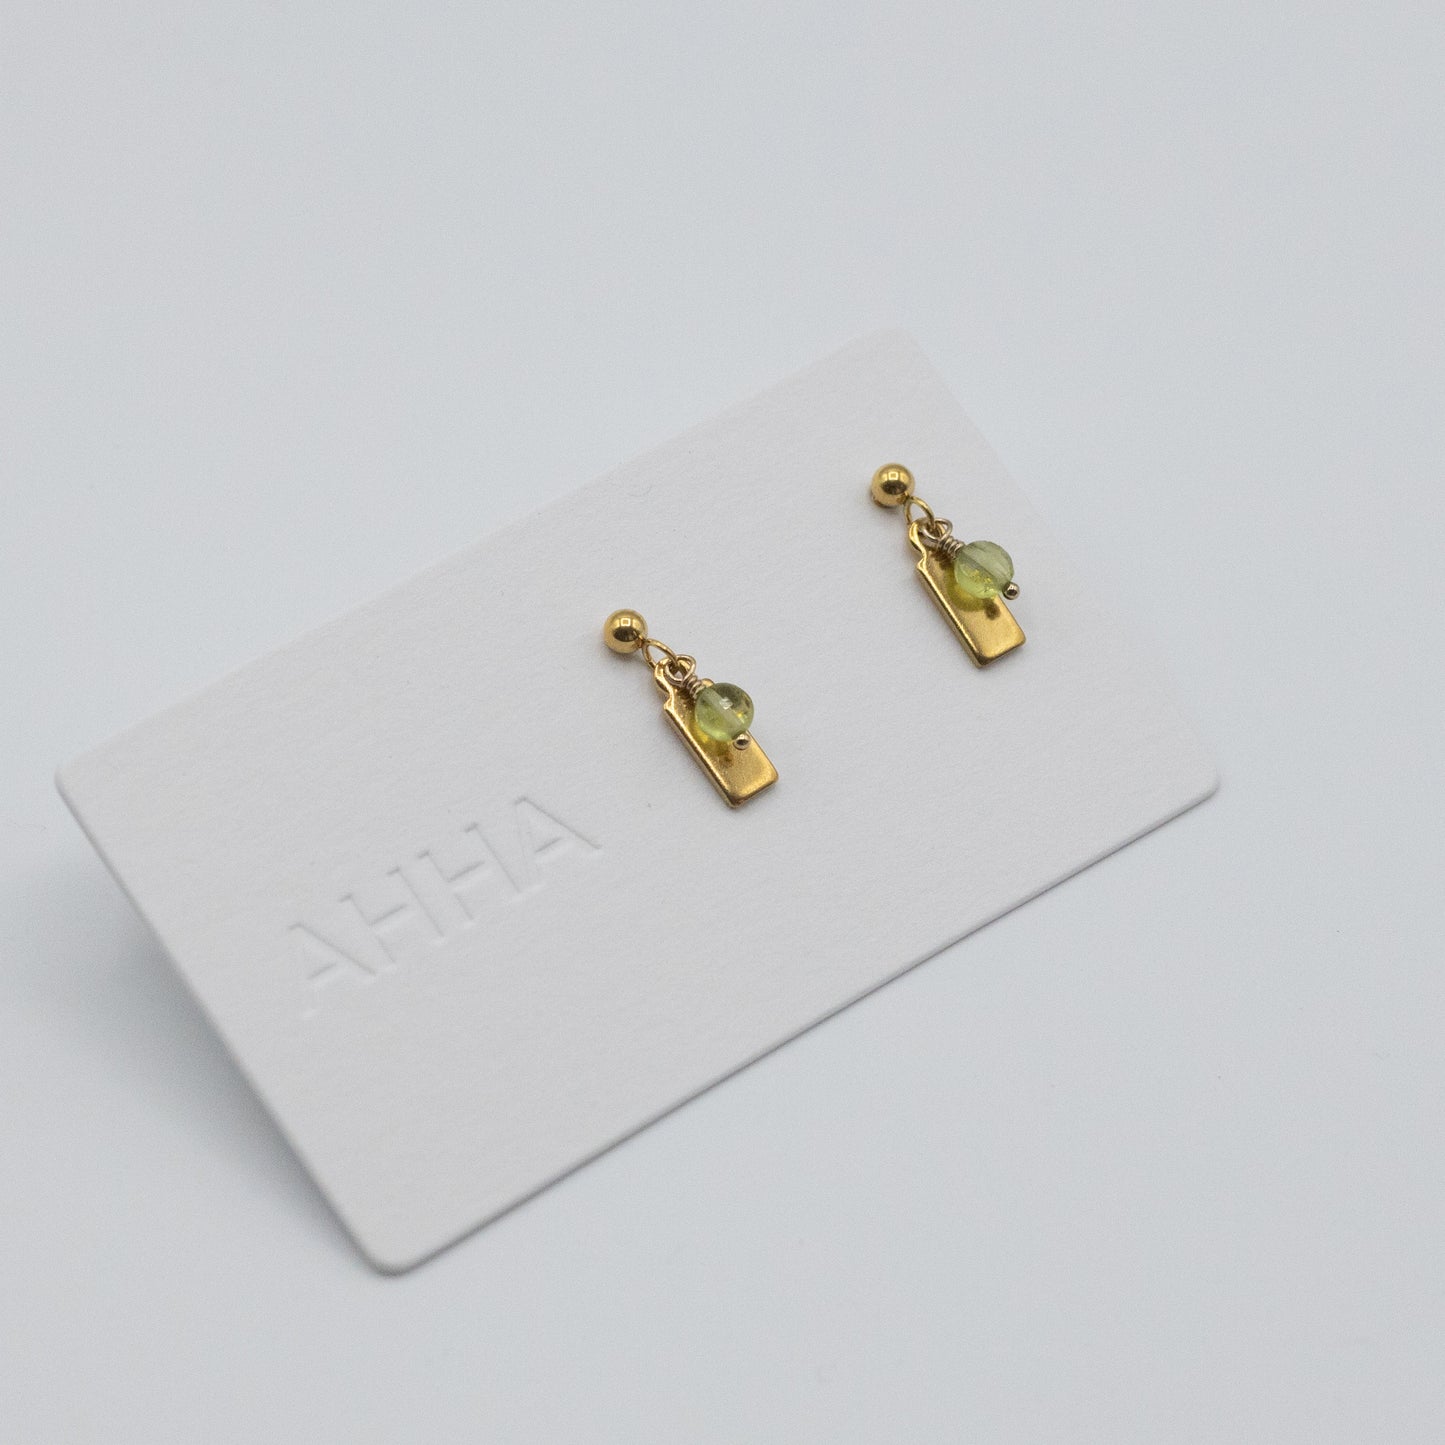 Birthstone Stud Earrings With Natural Gemstones